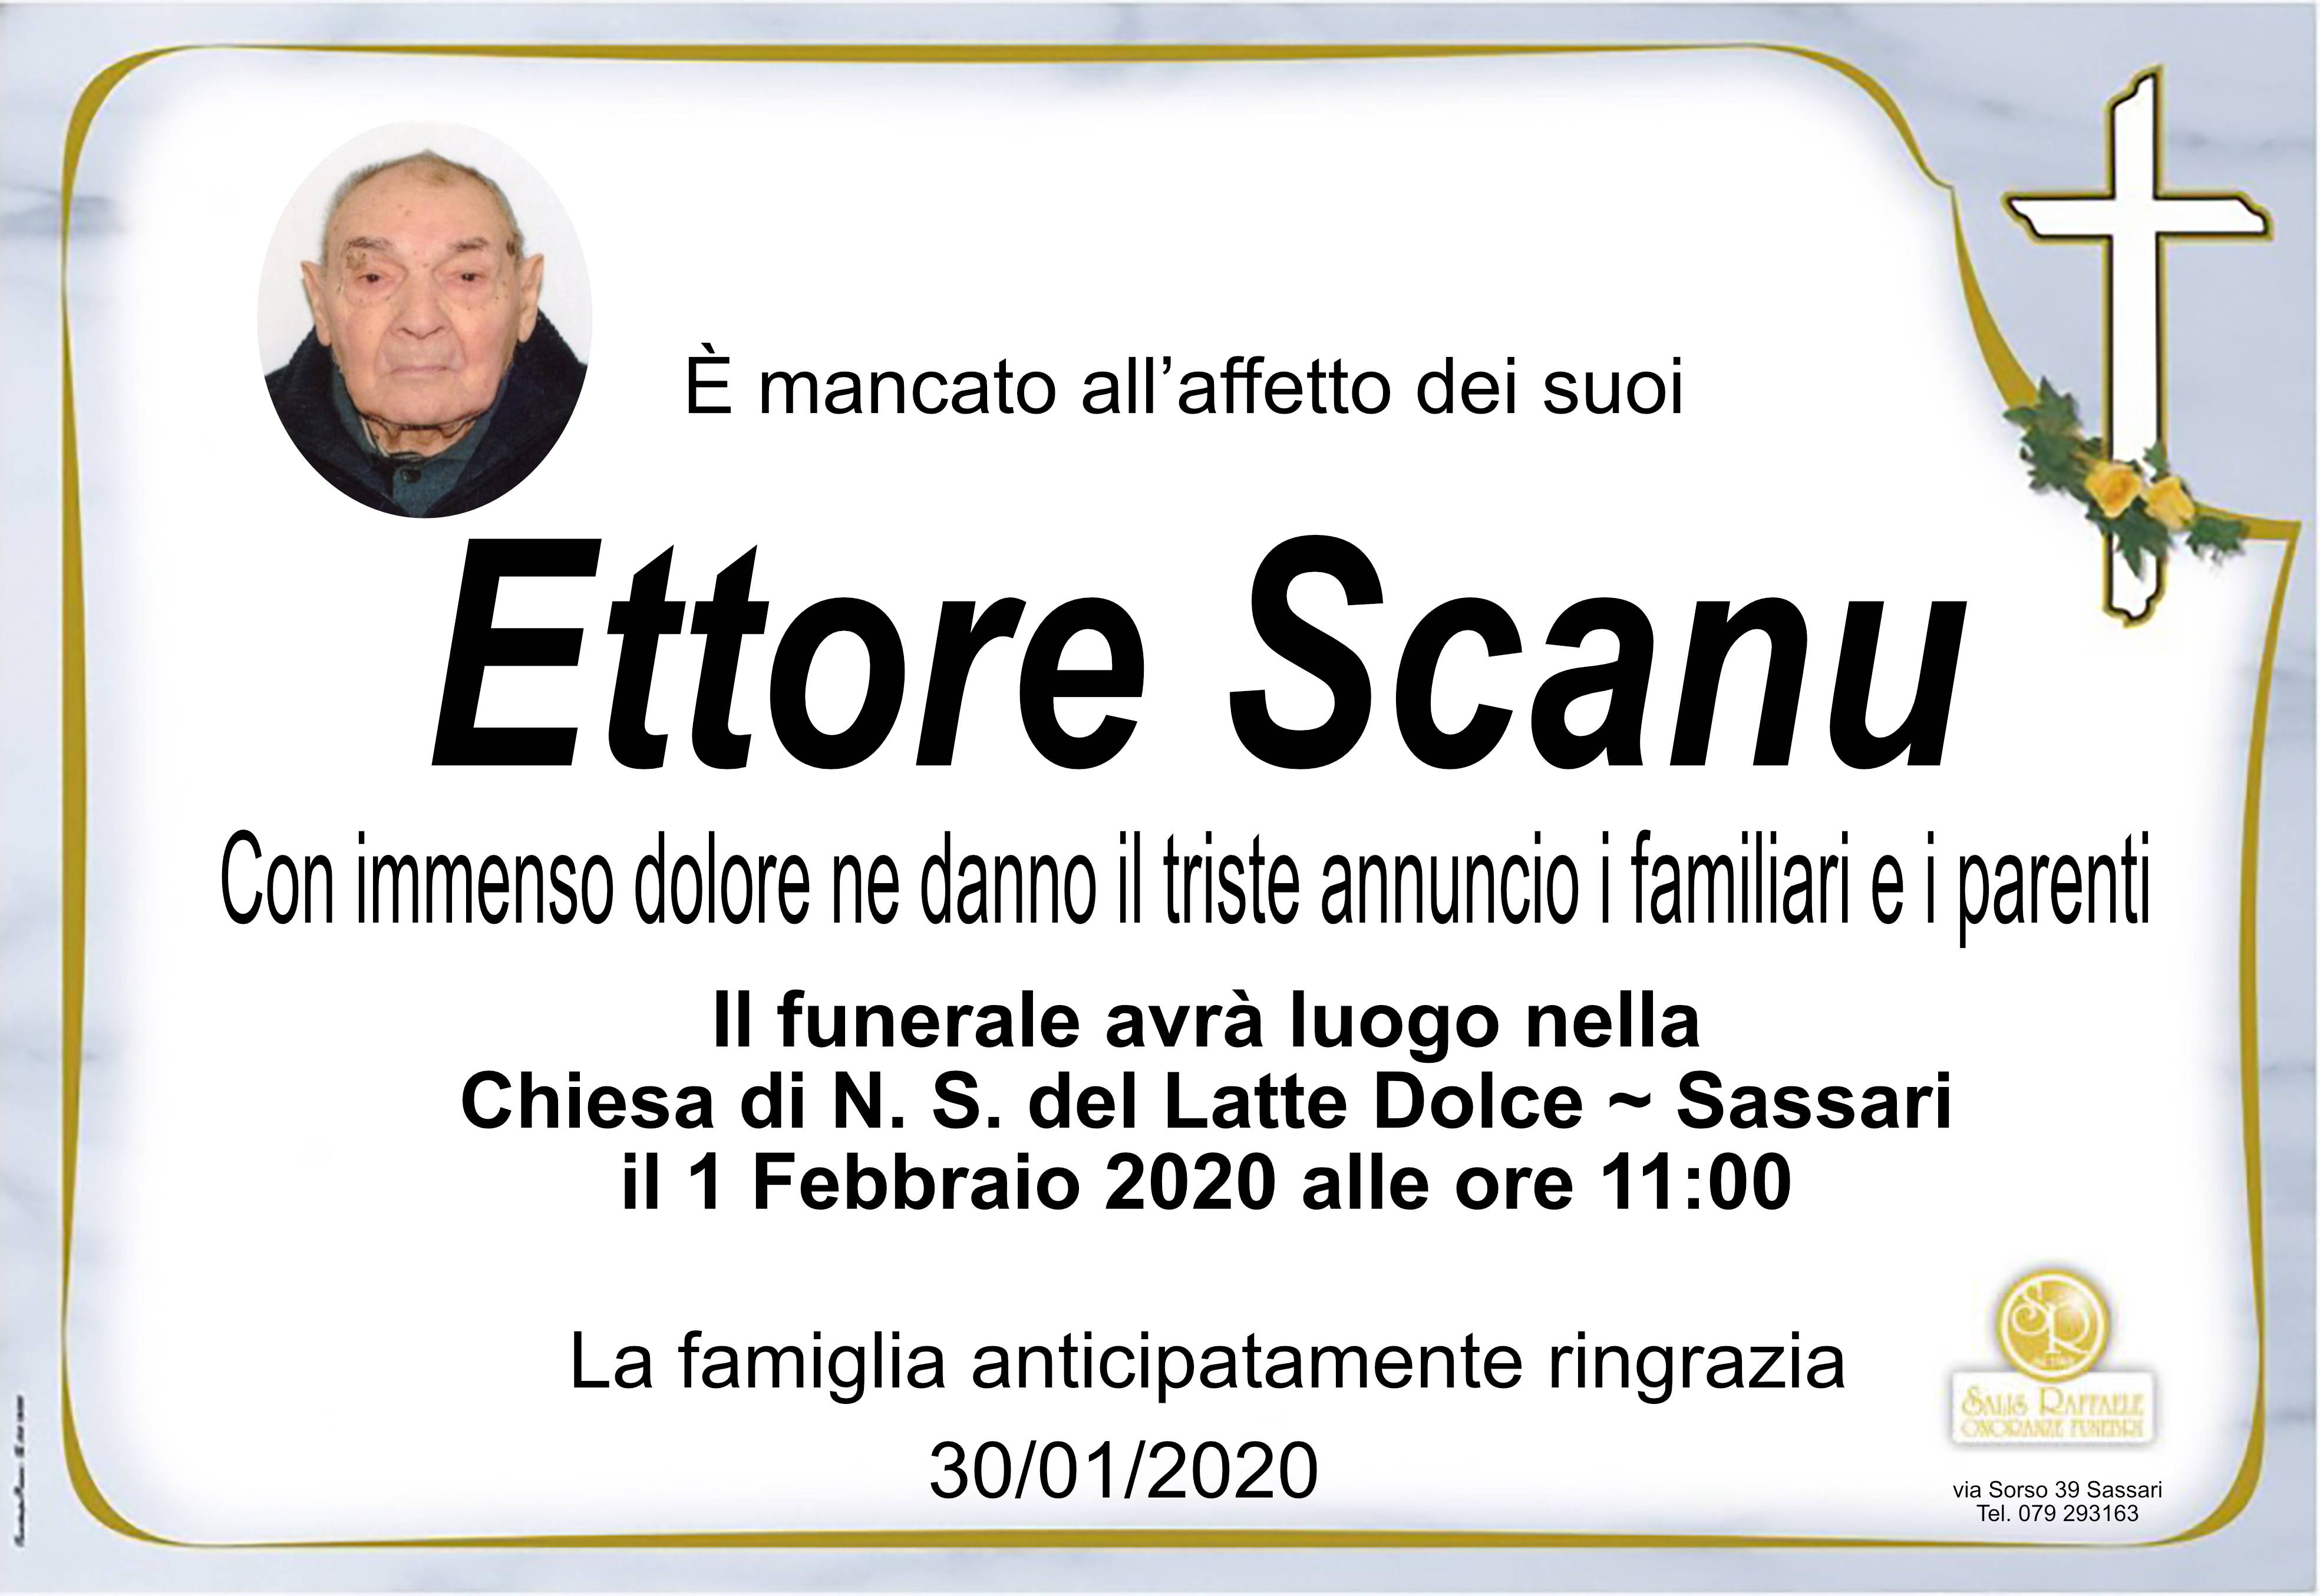 Ettore Scanu